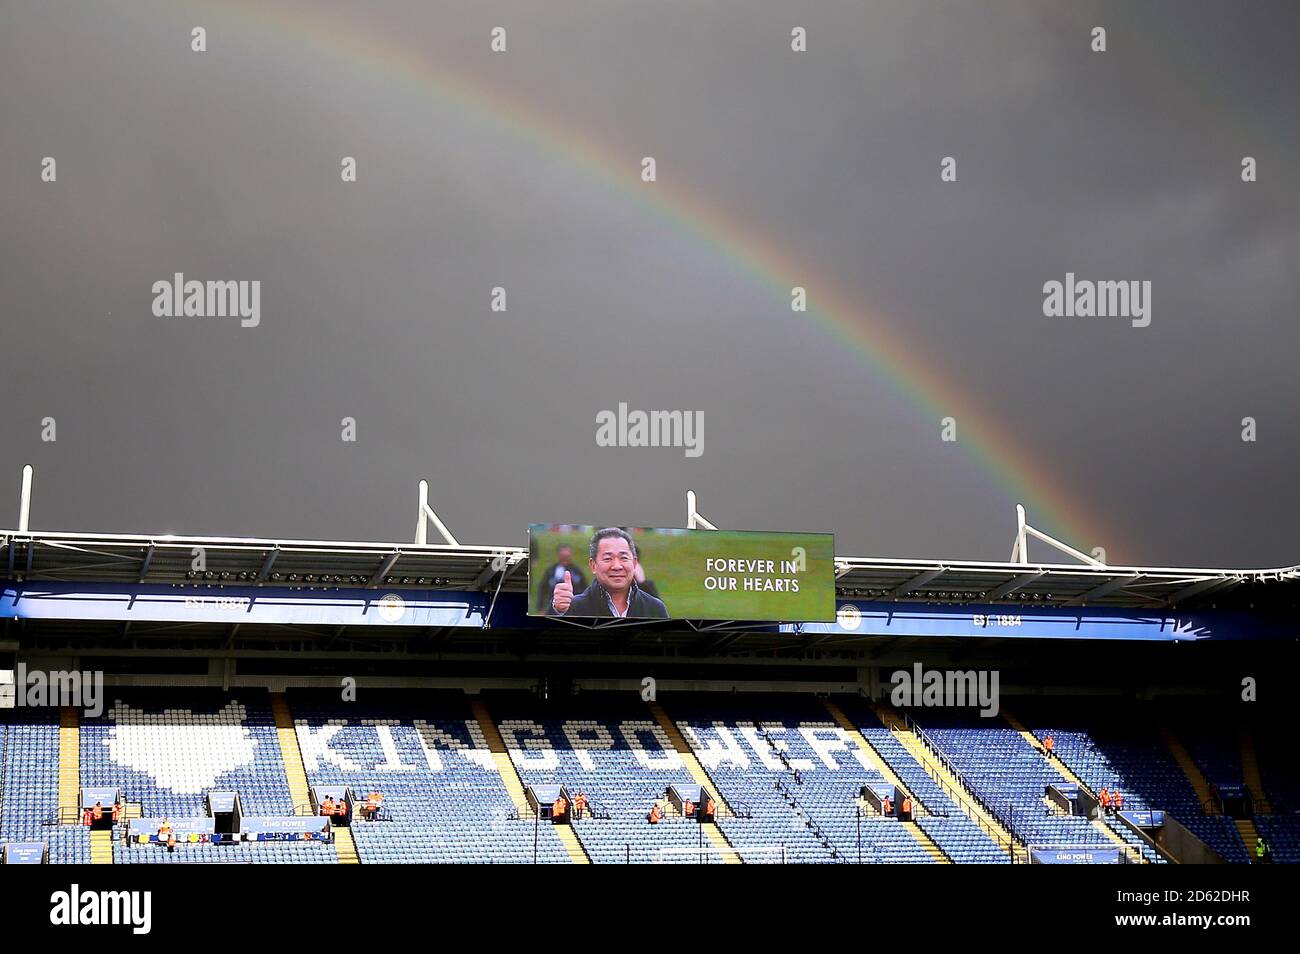 Un arco iris emerge sobre el estadio King Power antes de la partido donde  una gran pantalla muestra una imagen de homenaje Vichai Srivaddhanaprabha  que dice "siempre en nuestros corazones Fotografía de